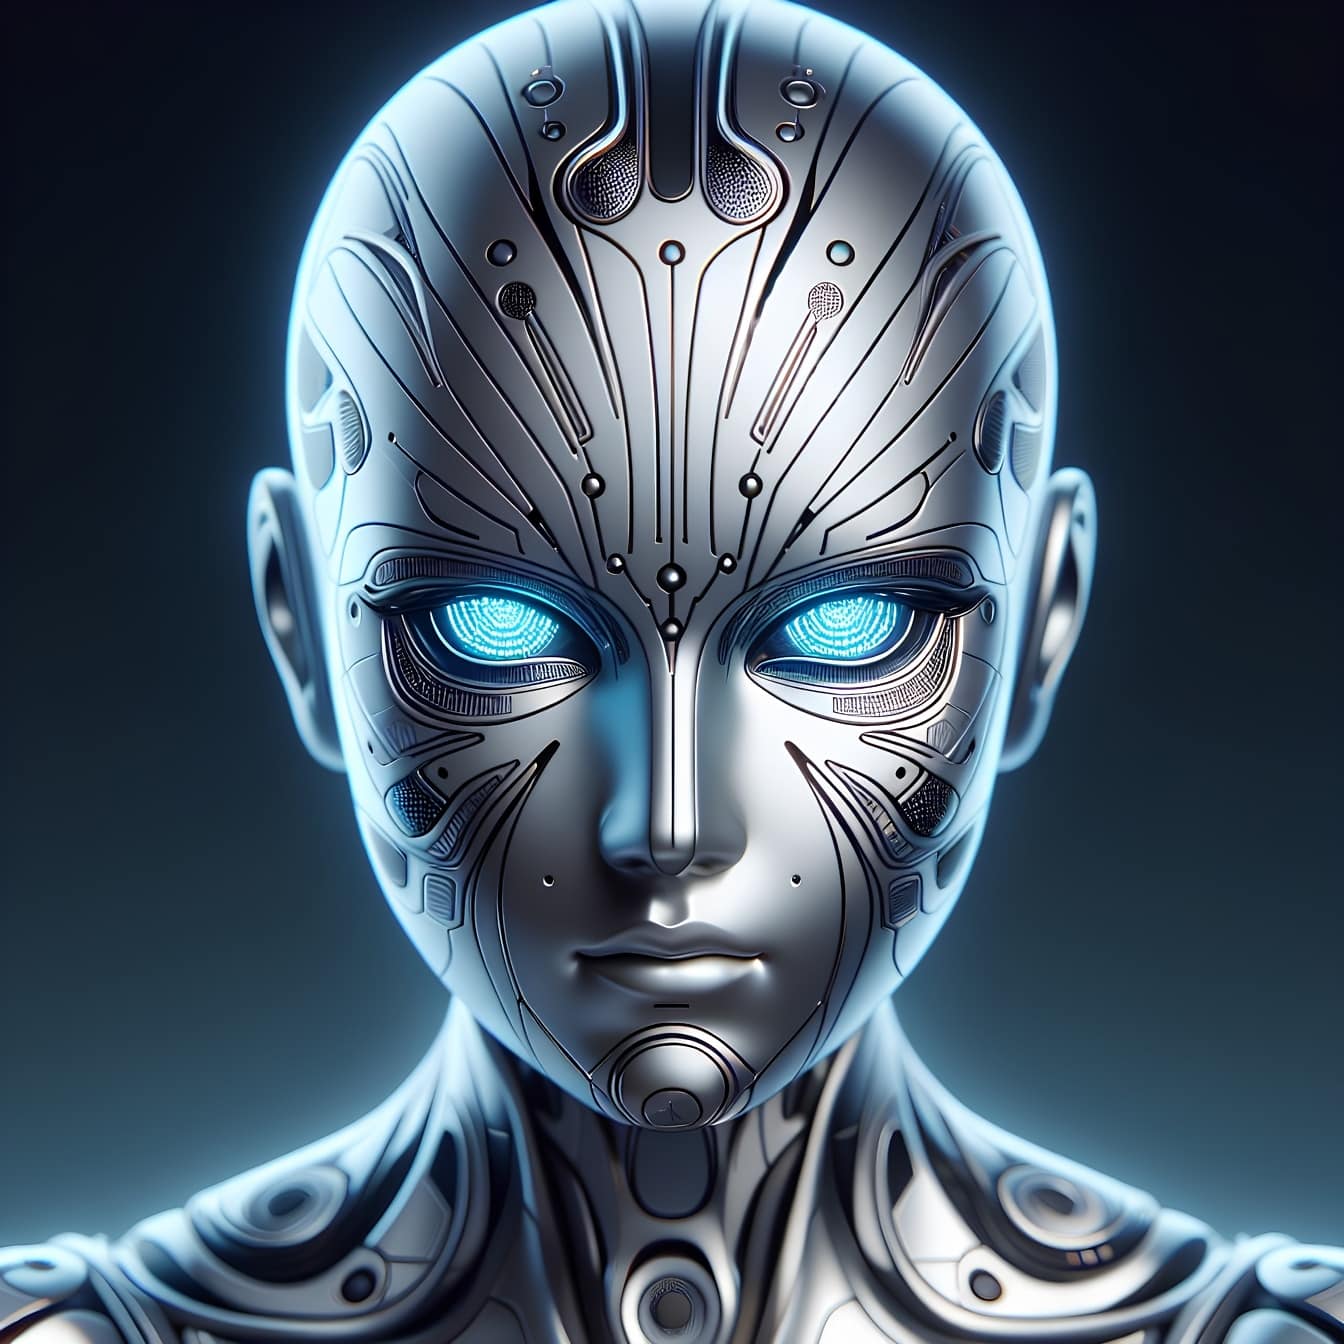 La testa di un robot androide, un cyborg-extraterrestre con un’intelligenza artificiale e occhi luminosi